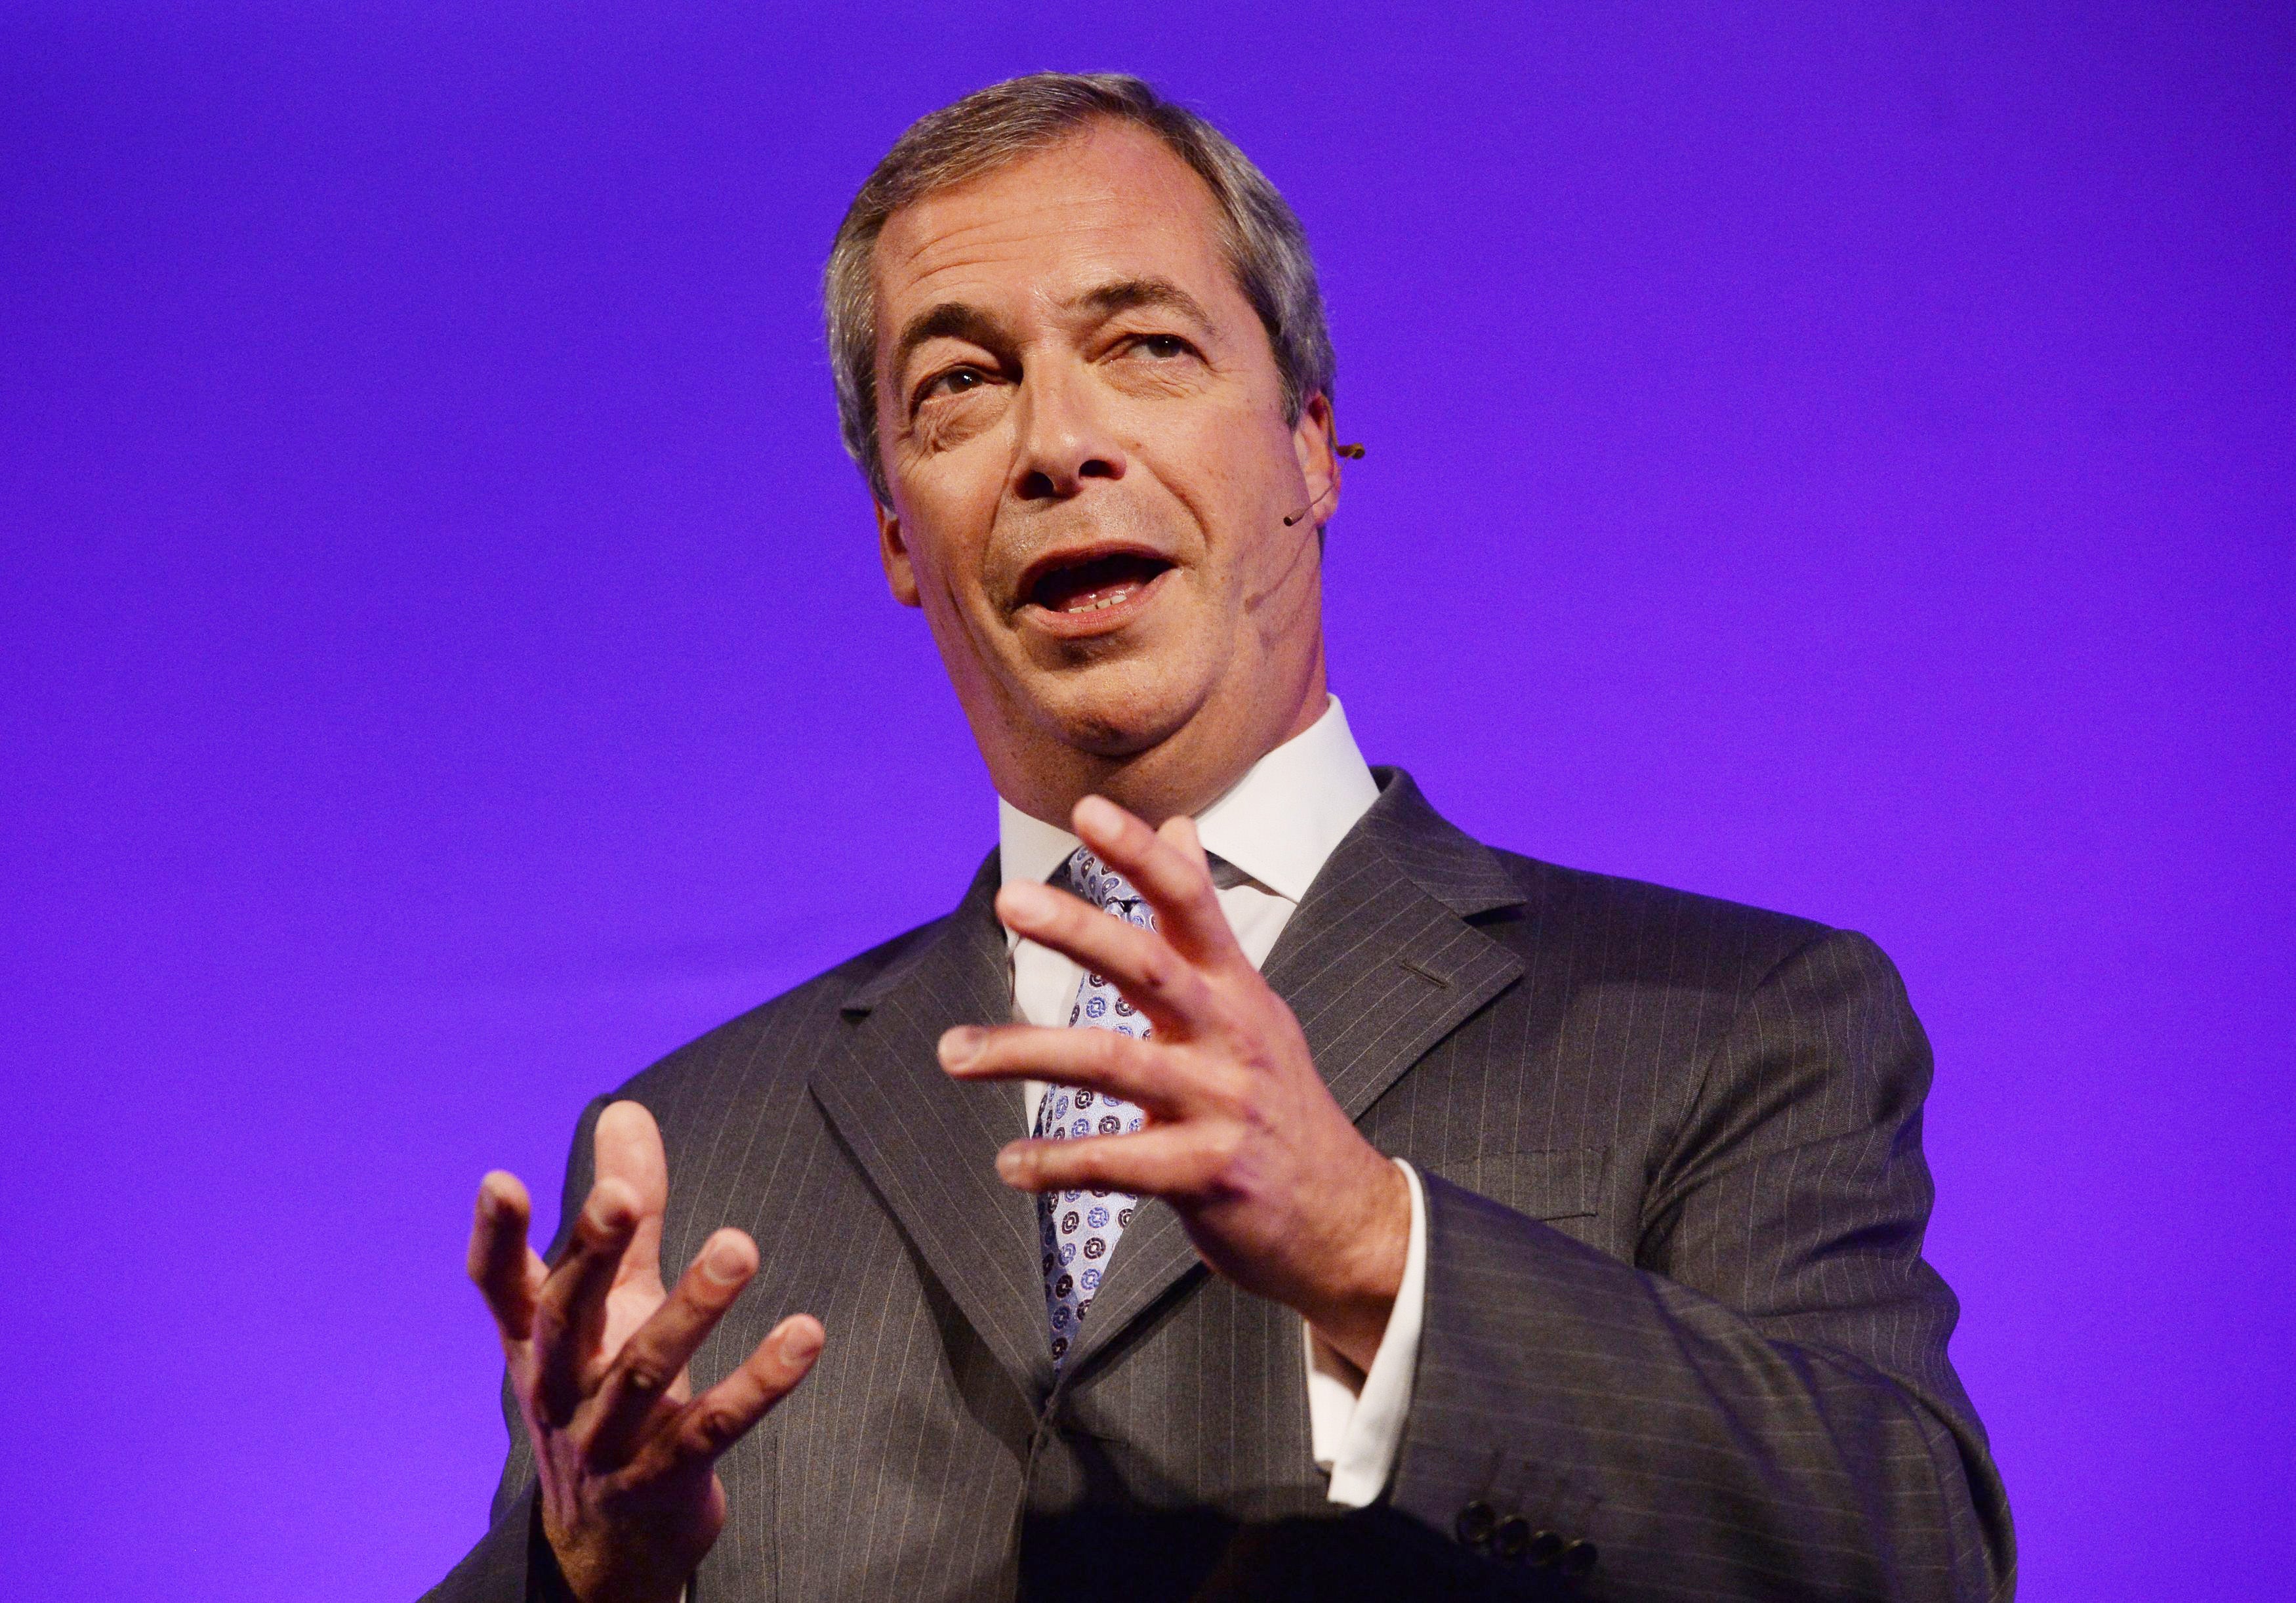 Nigel Farage said Donald Trump had broadened political debate, however